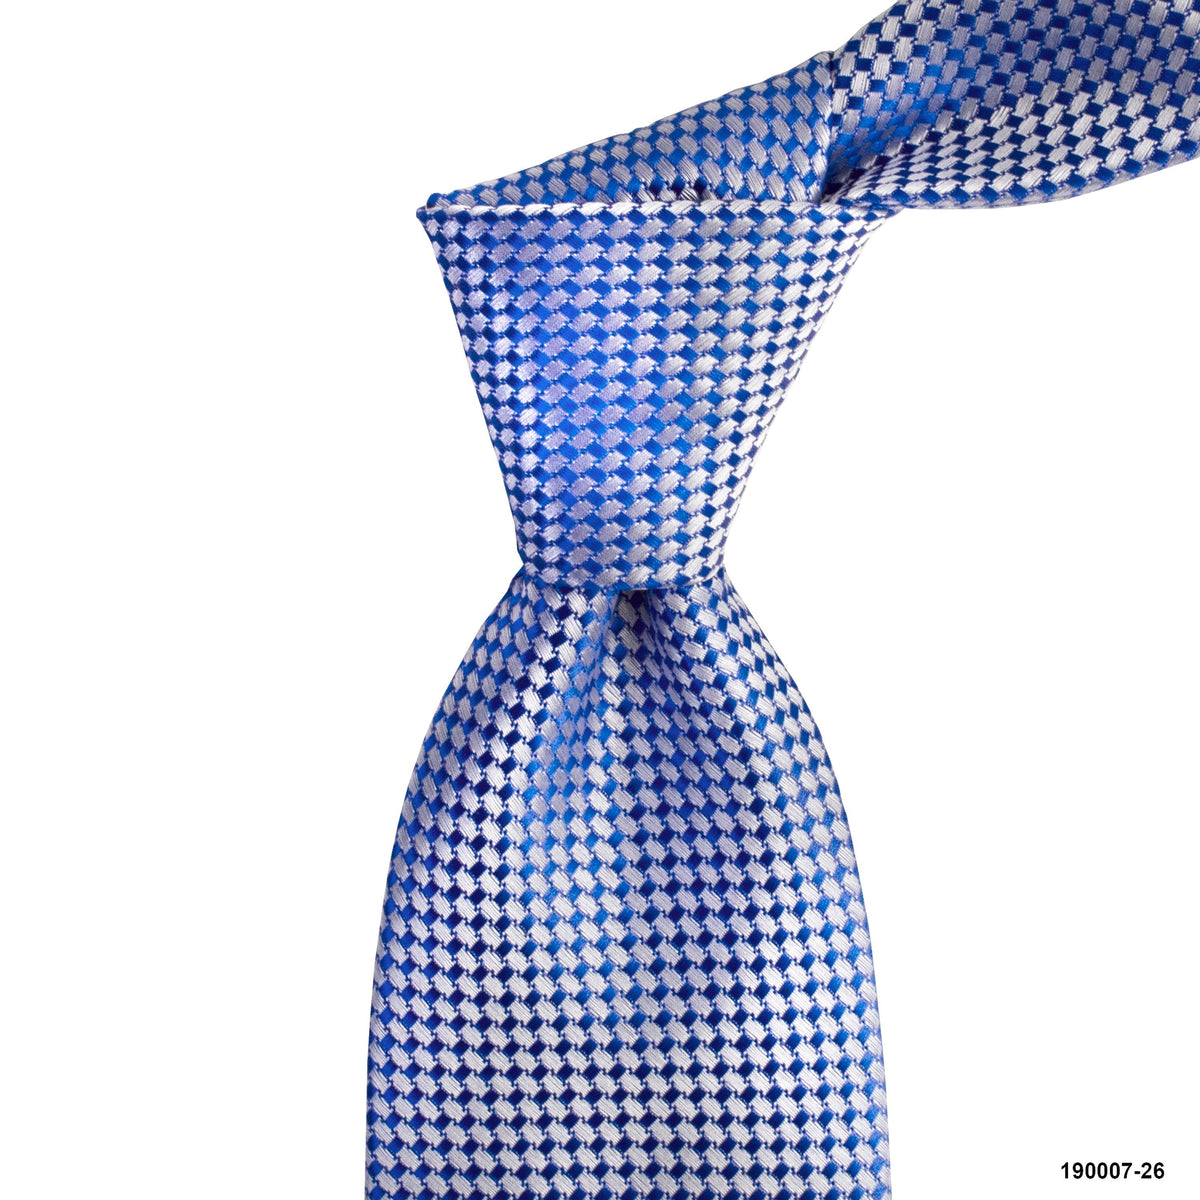 MarZthomson 8cm Light Blue with Light Silver Weaved Design Detail Tie-Cufflinks.com.sg | Neckties.com.sg